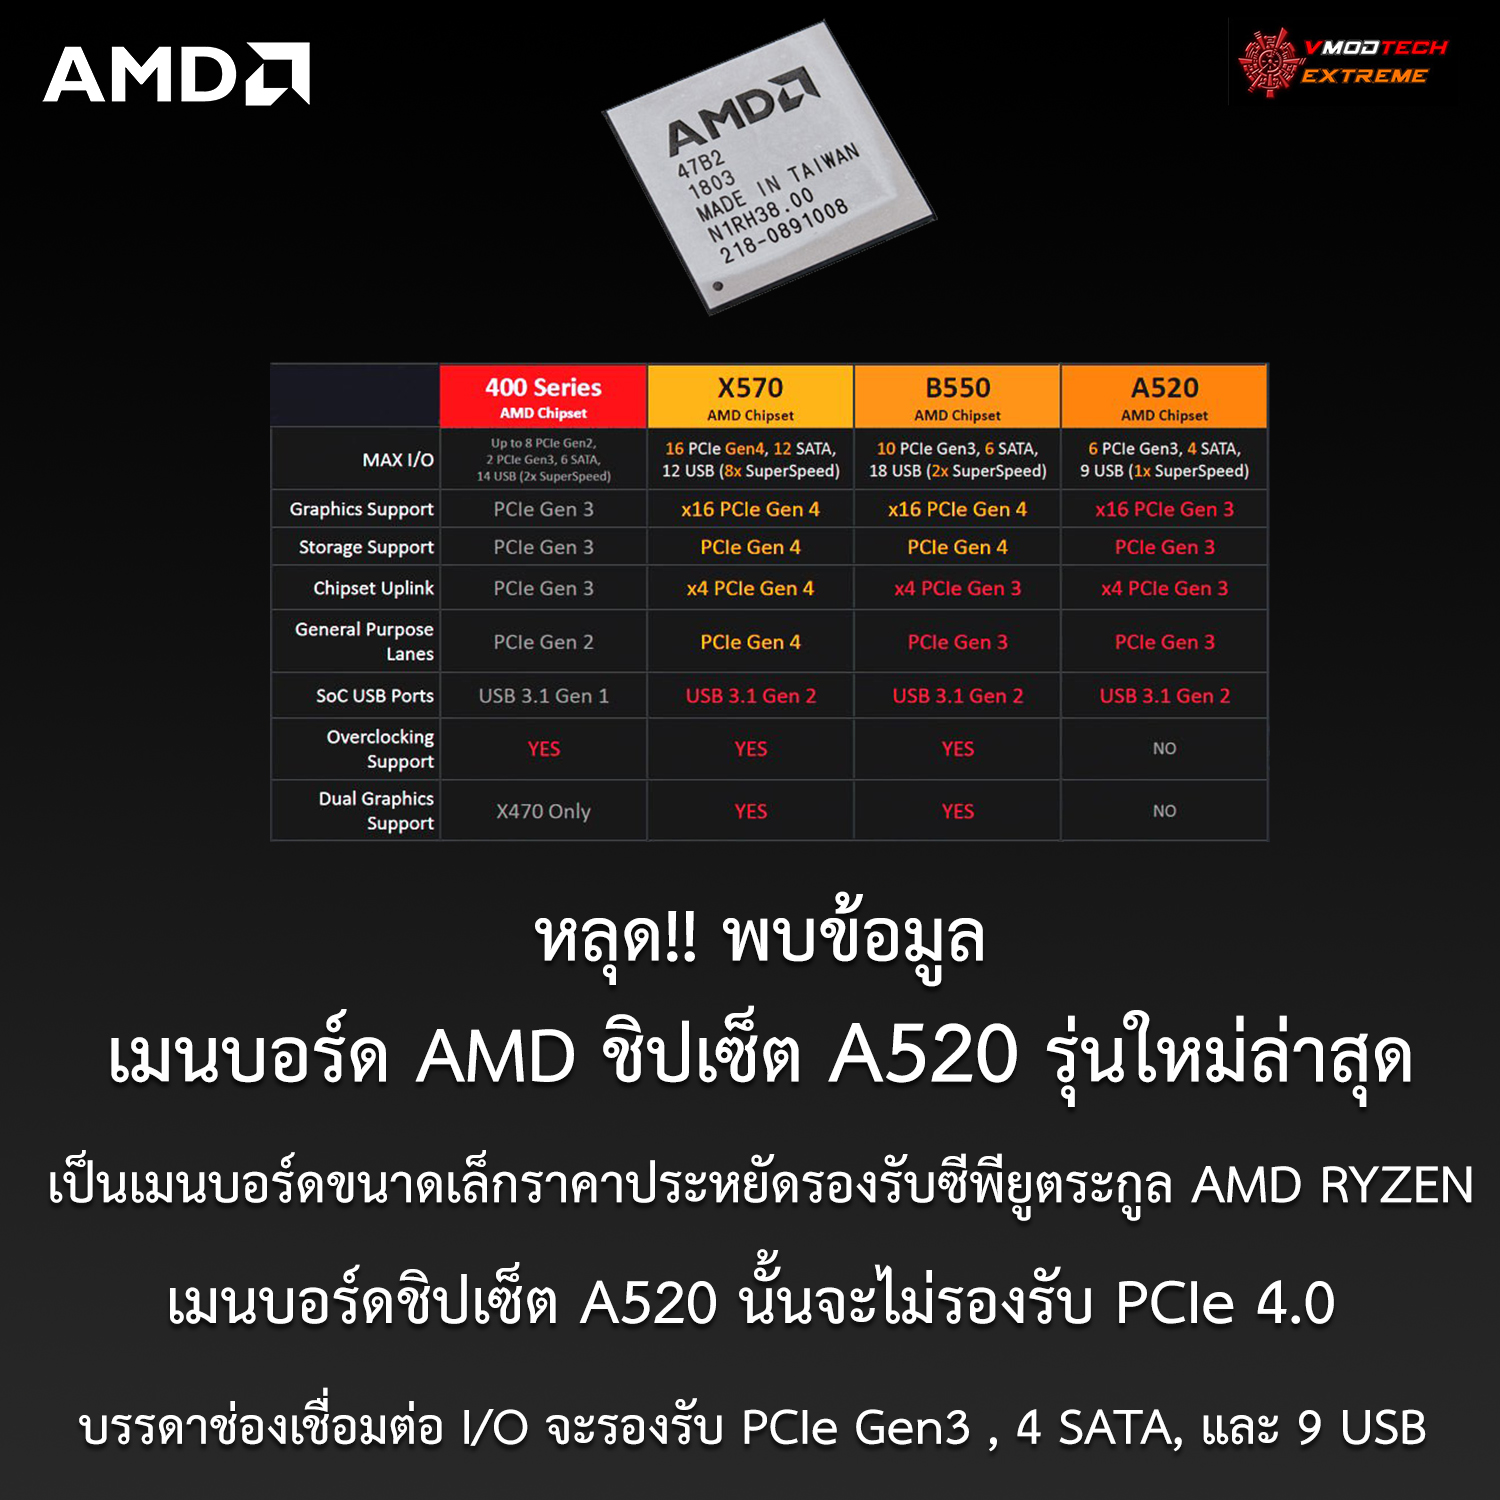 หลุด!! พบข้อมูลเมนบอร์ดชิปเซ็ต A520 รุ่นใหม่ล่าสุดที่คาดว่ารองรับซีพียูตระกูล AMD RYZEN ปรากฏในฐานข้อมูล ECC  